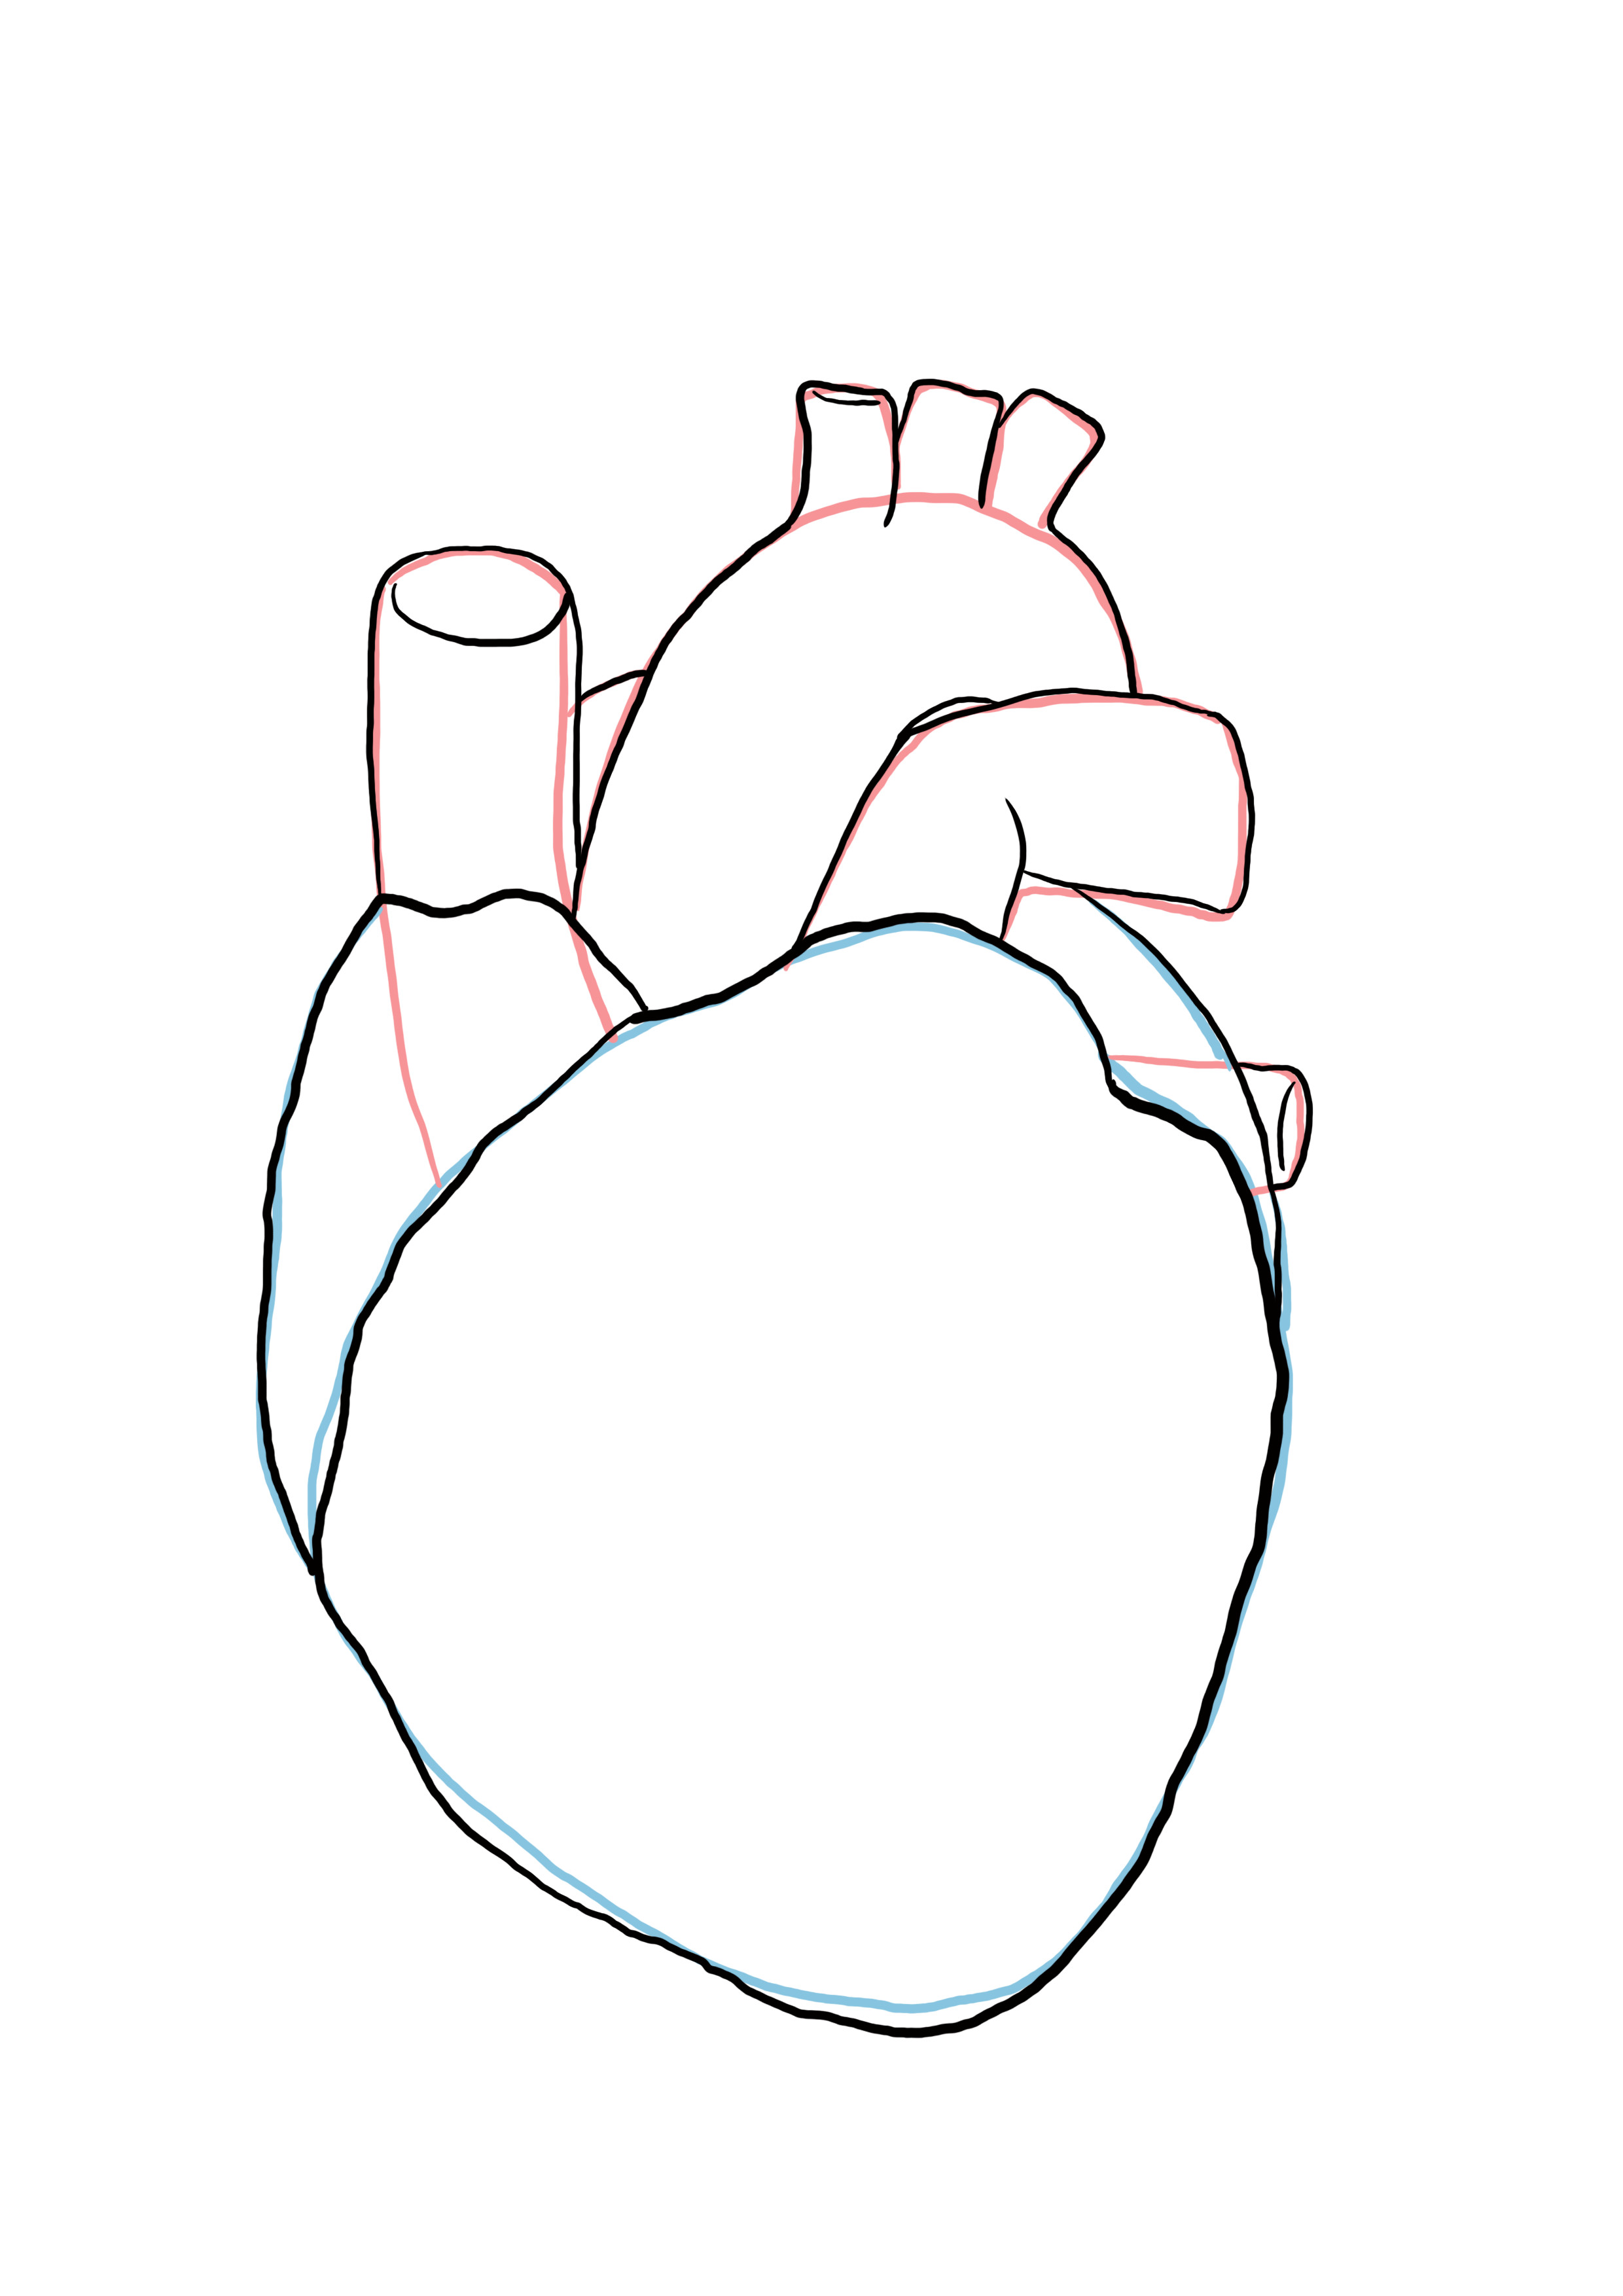 détailler le dessin du coeur anatomique 4